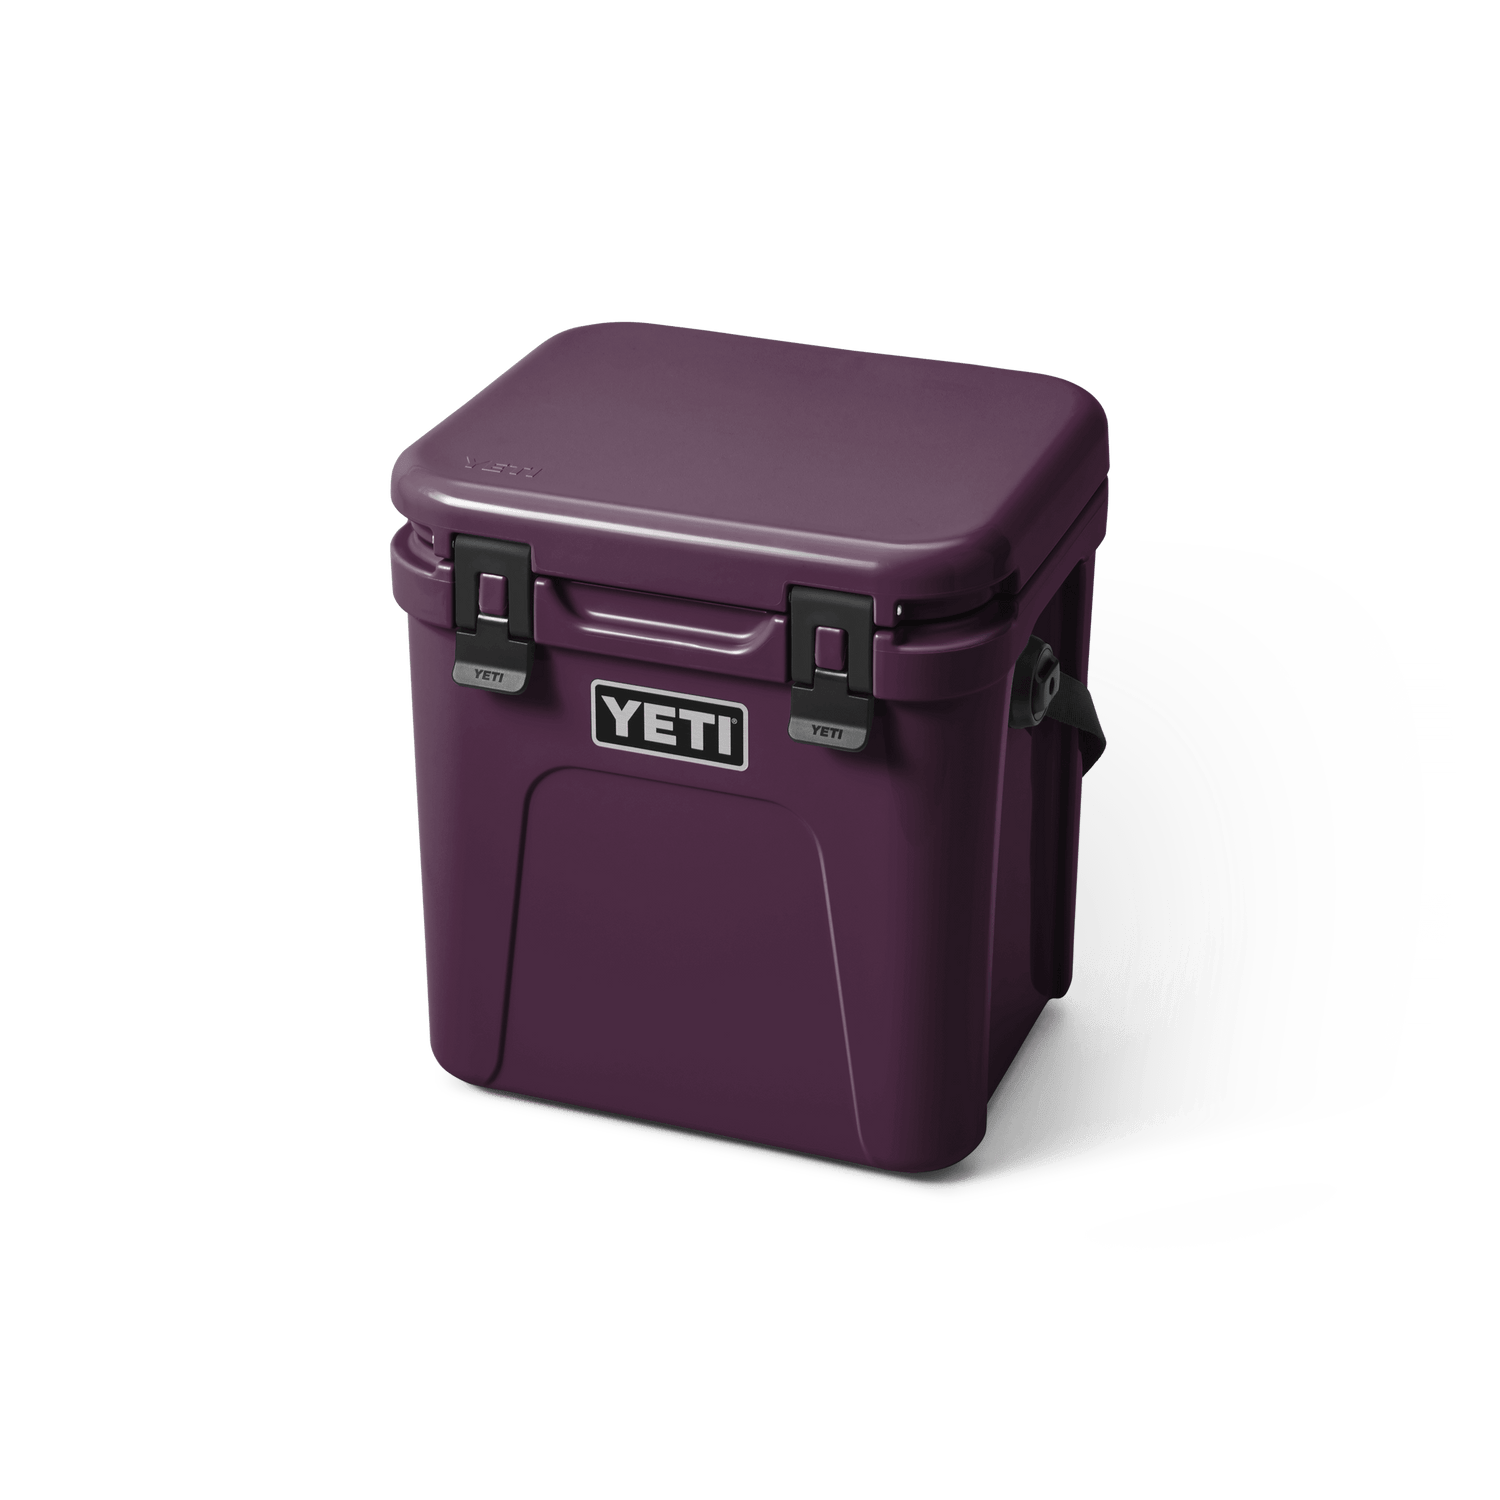 YETI® Roadie 24 Cool Box – YETI EUROPE, 41% OFF